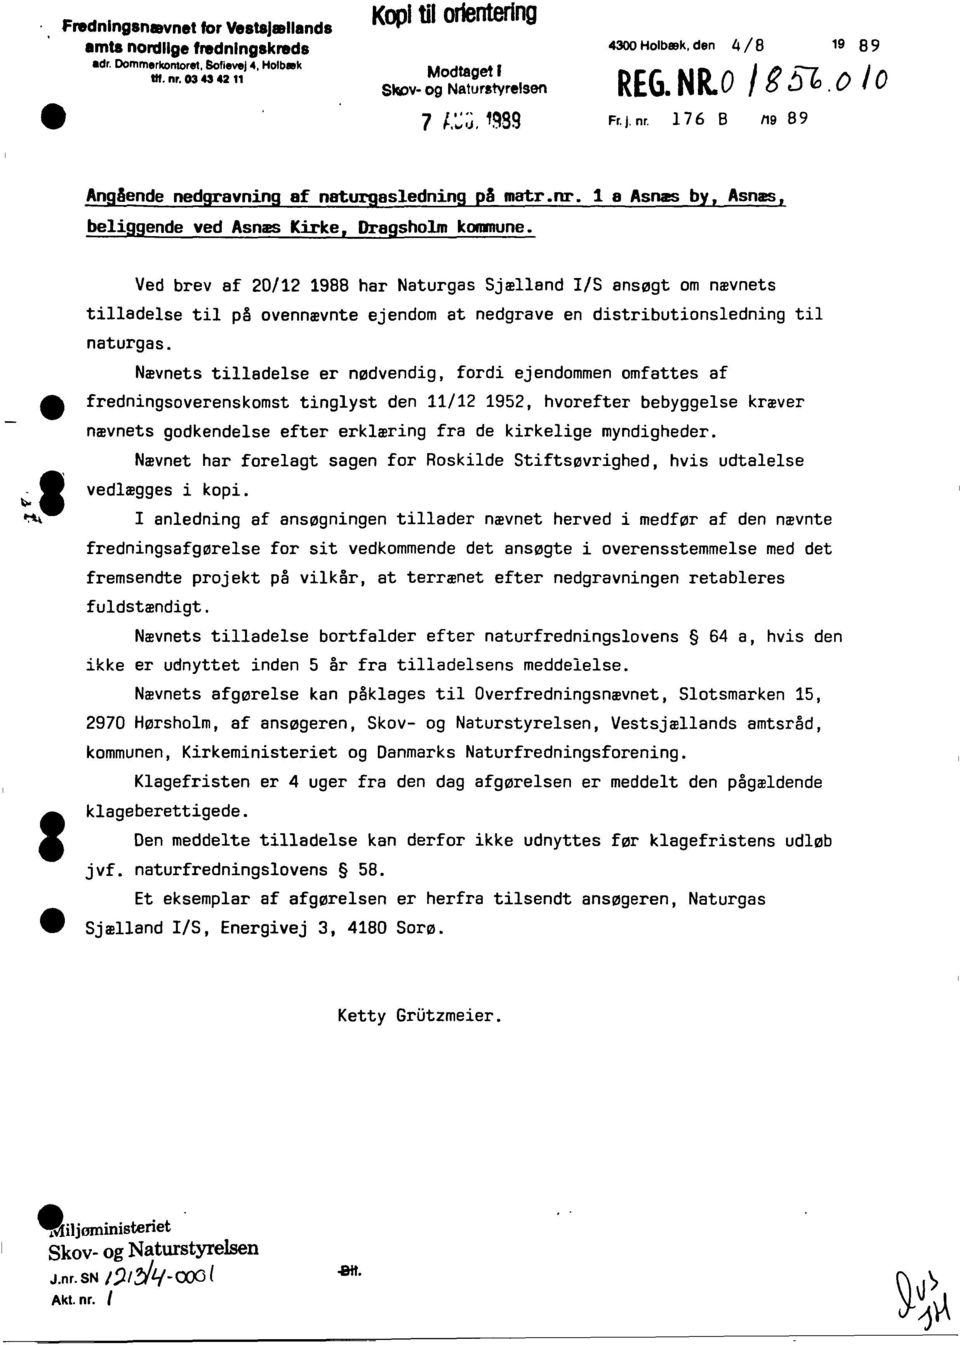 Ved brev af 20/12 1988 har Naturgas Sjælland /S ansøgt om nævnets tilladelse til på ovennævnte ejendom at nedgrave en distributionsledning til naturgas.